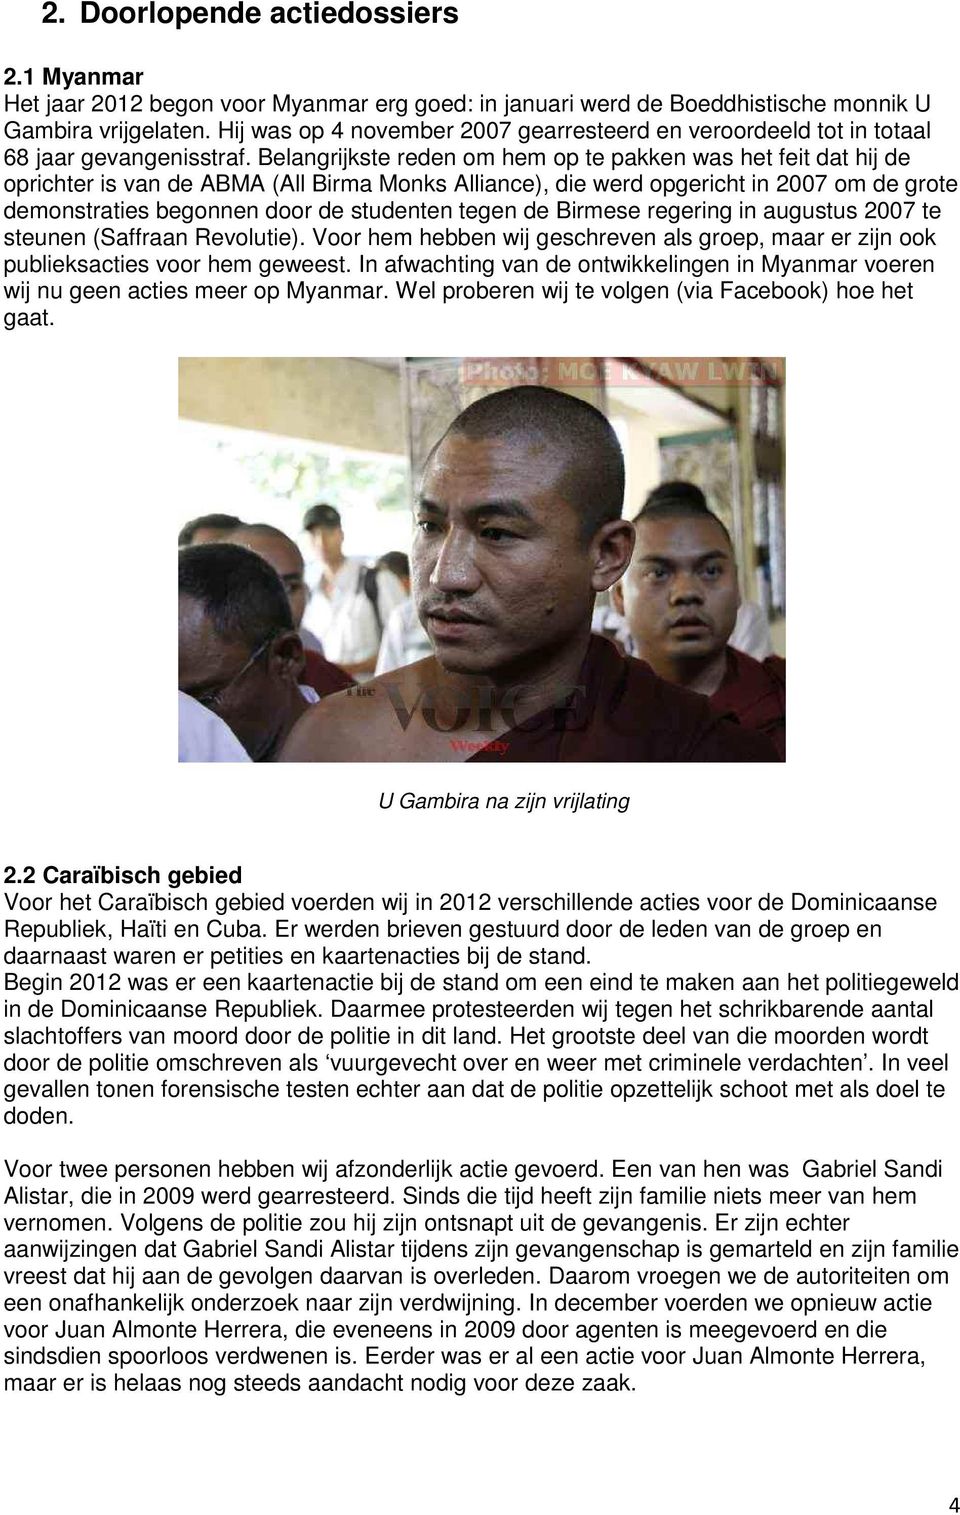 Belangrijkste reden om hem op te pakken was het feit dat hij de oprichter is van de ABMA (All Birma Monks Alliance), die werd opgericht in 2007 om de grote demonstraties begonnen door de studenten